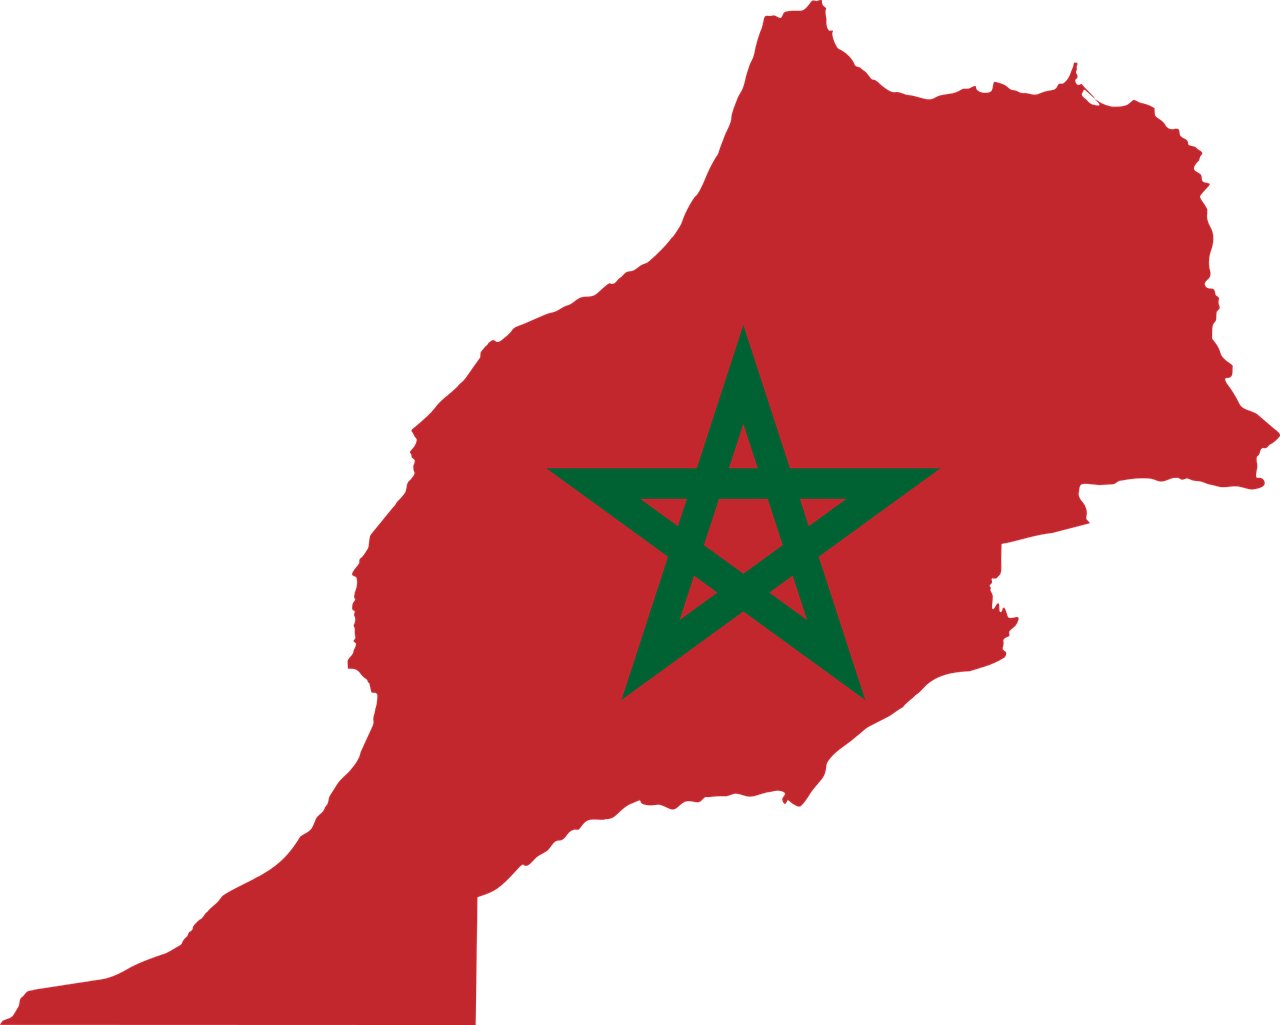 El Brexit se presenta como una oportunidad para las relaciones Marruecos-Reino Unido